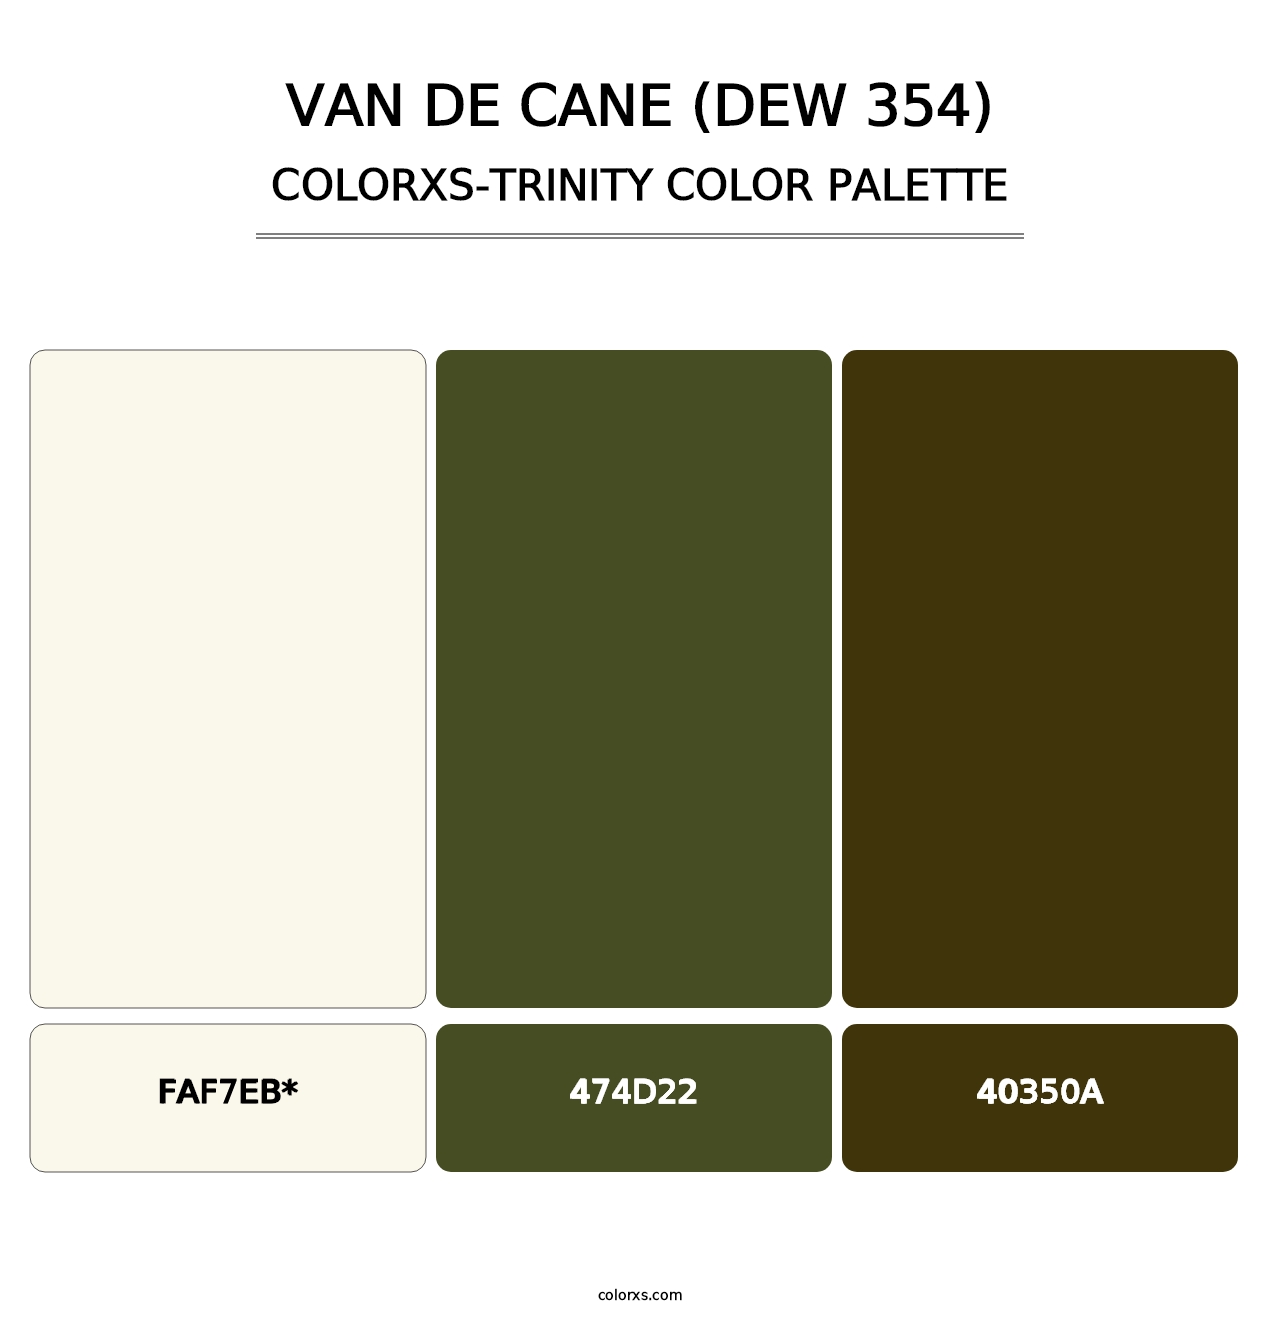 Van de Cane (DEW 354) - Colorxs Trinity Palette